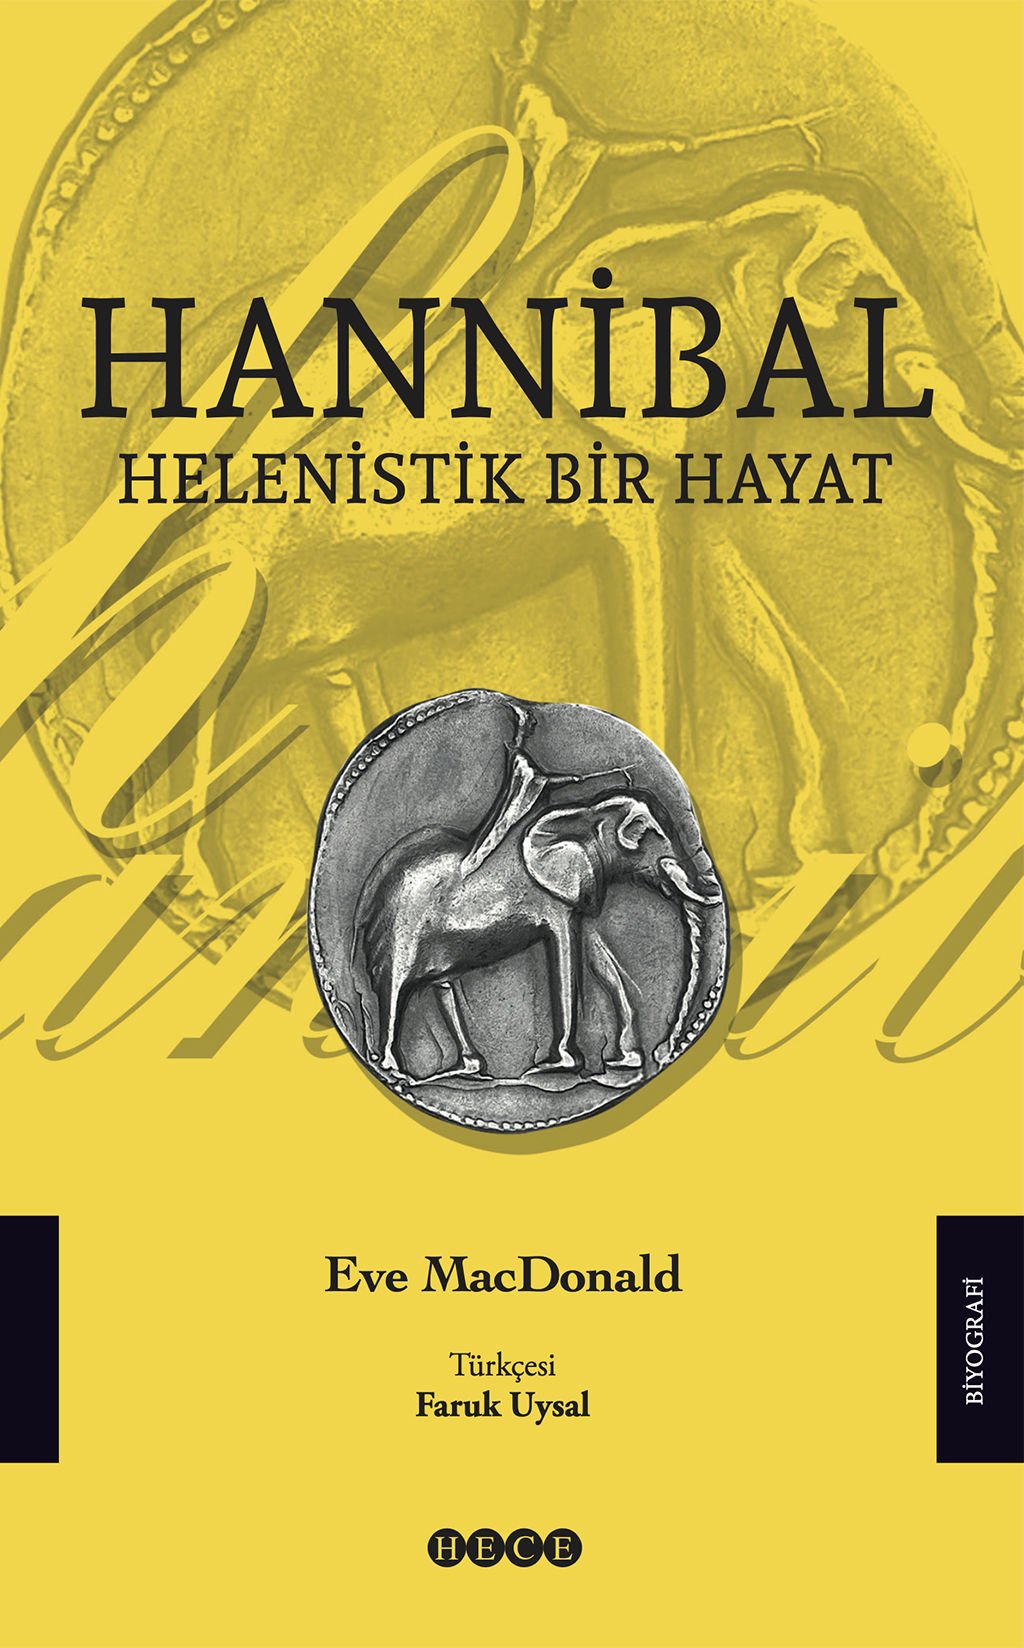 Hannibal 'Helenistik Bir Hayat'